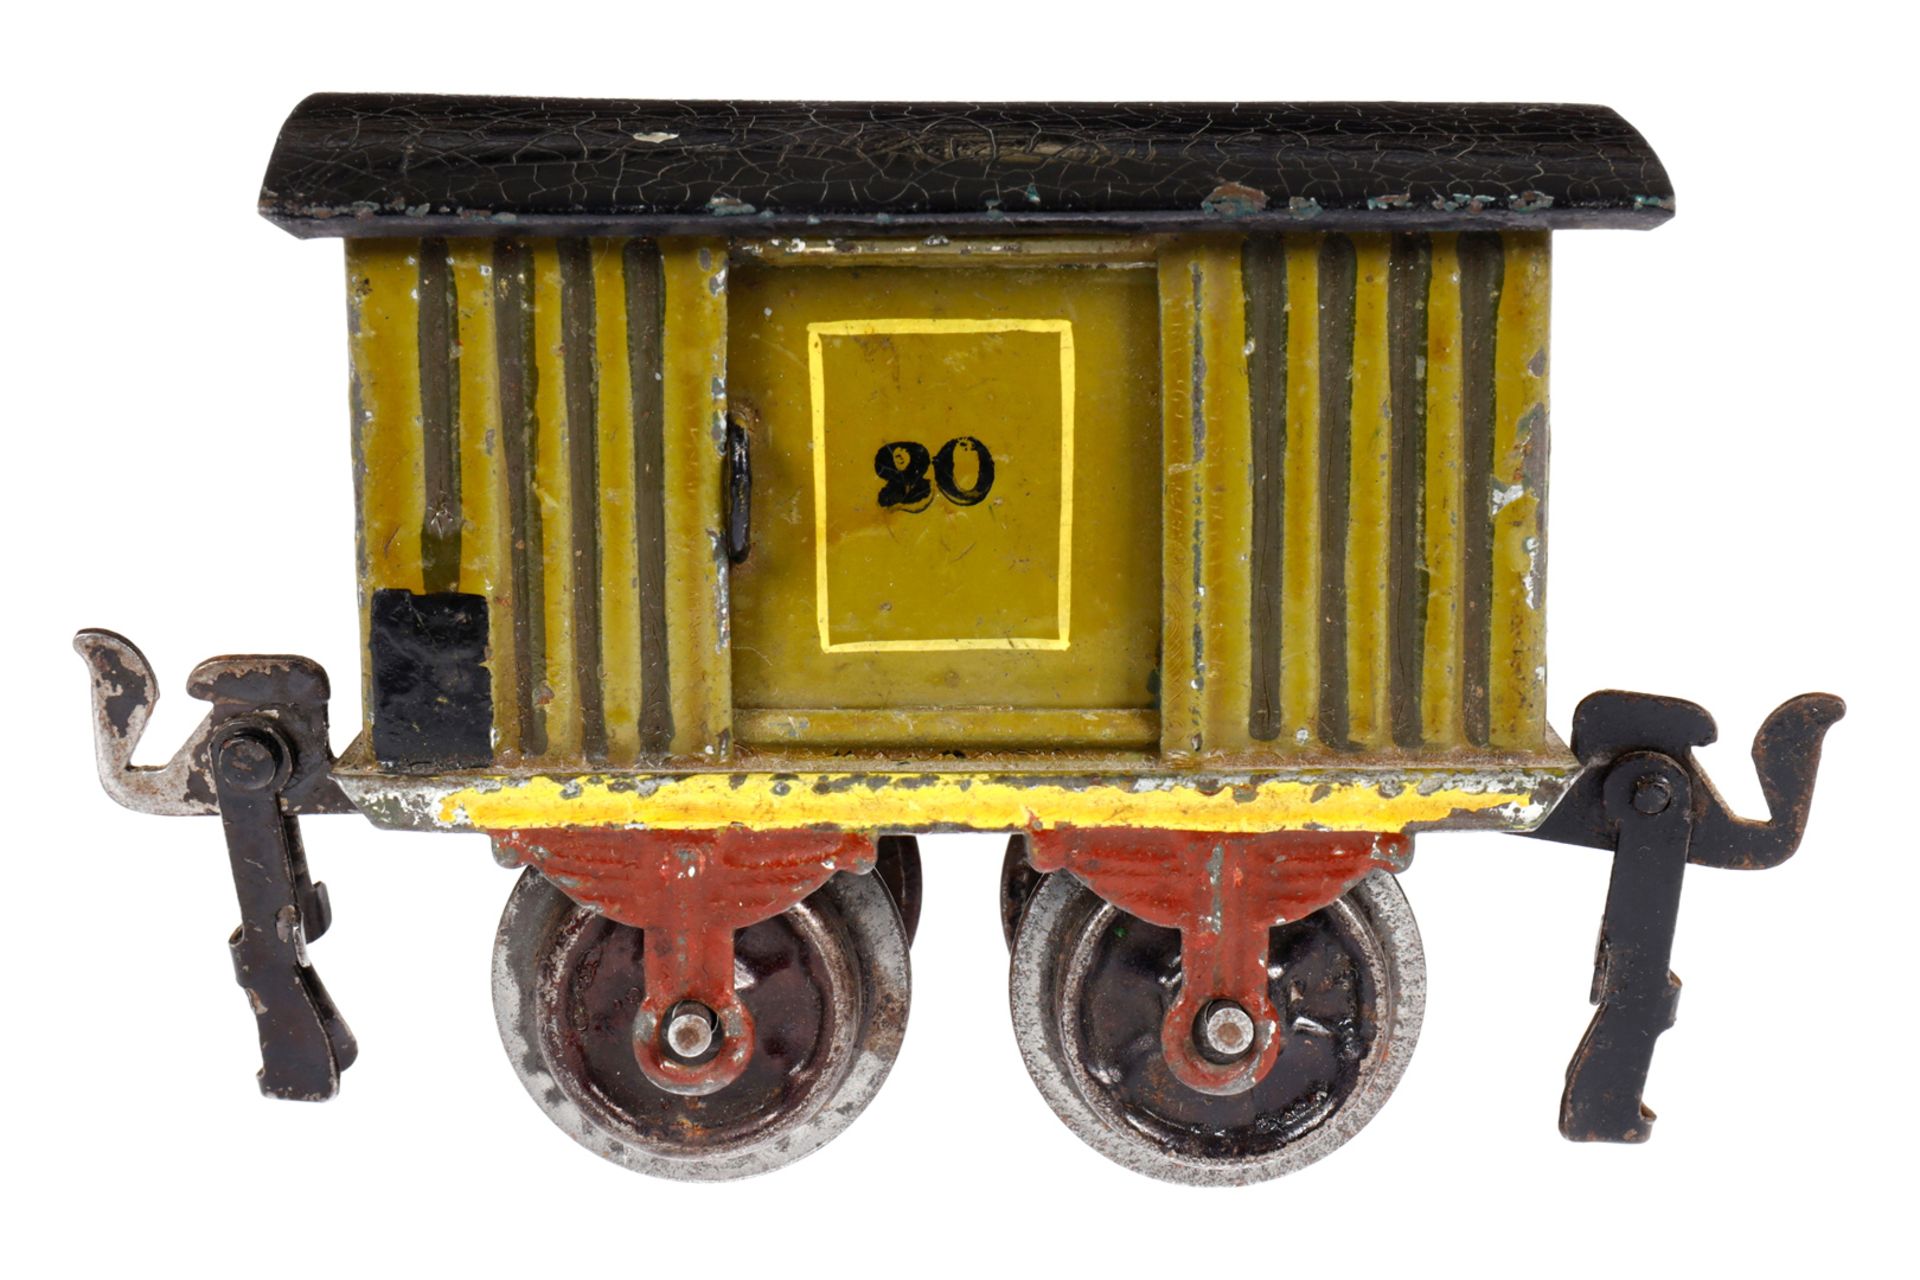 Märklin ged. Güterwagen 1857, Spur 0, uralt, HL, mit 2 ST, LS und gealterter Lack, L 8, Z 2-3